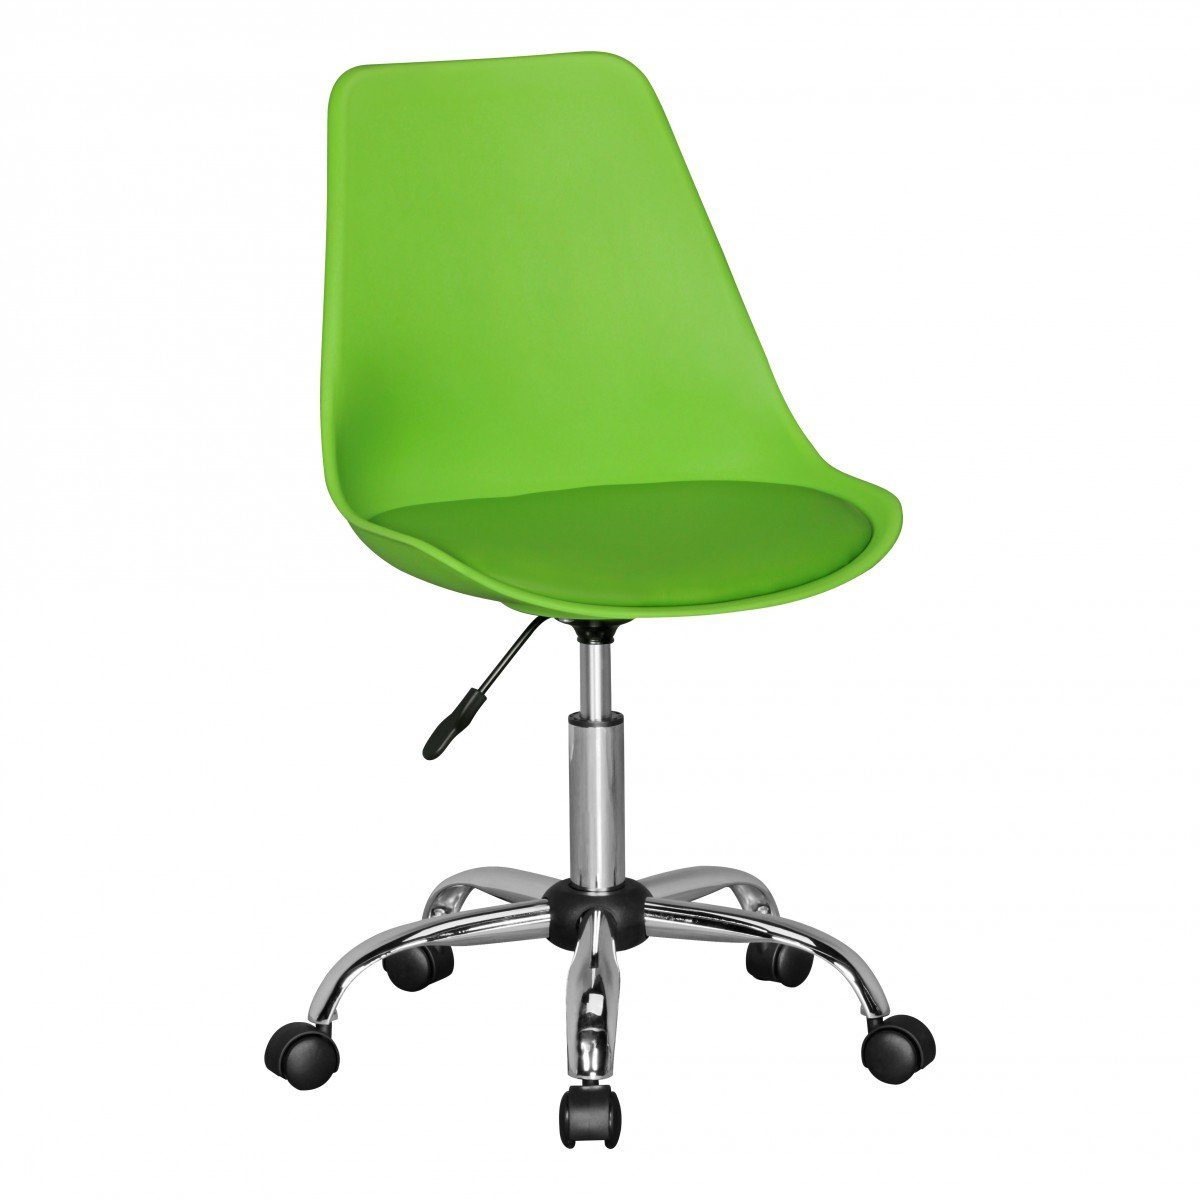 FINEBUY Drehstuhl »SuVa5077_1« (Schreibtischstuhl Kunstleder Grün  Höhenverstellbar), Drehsessel für Schreibtisch, Stuhl mit Rückenlehne